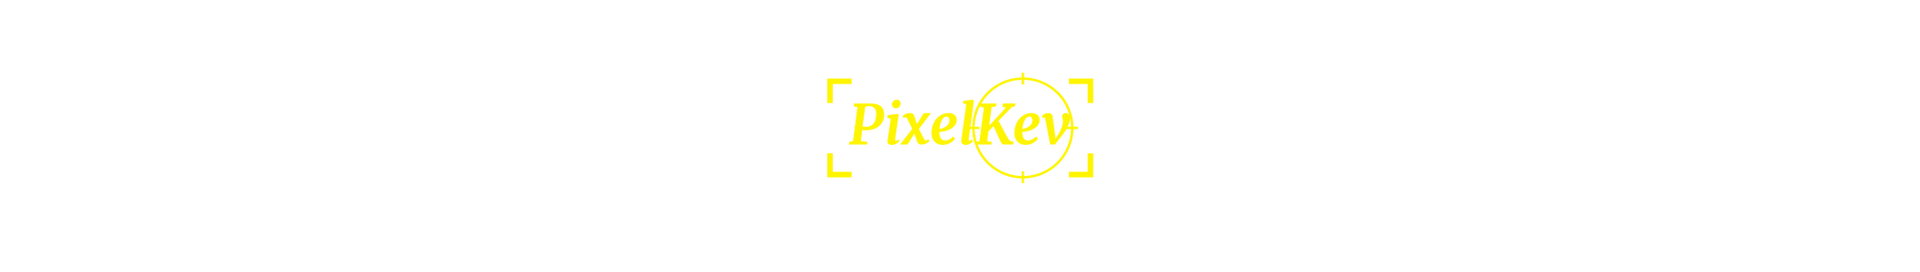 pixelkev_